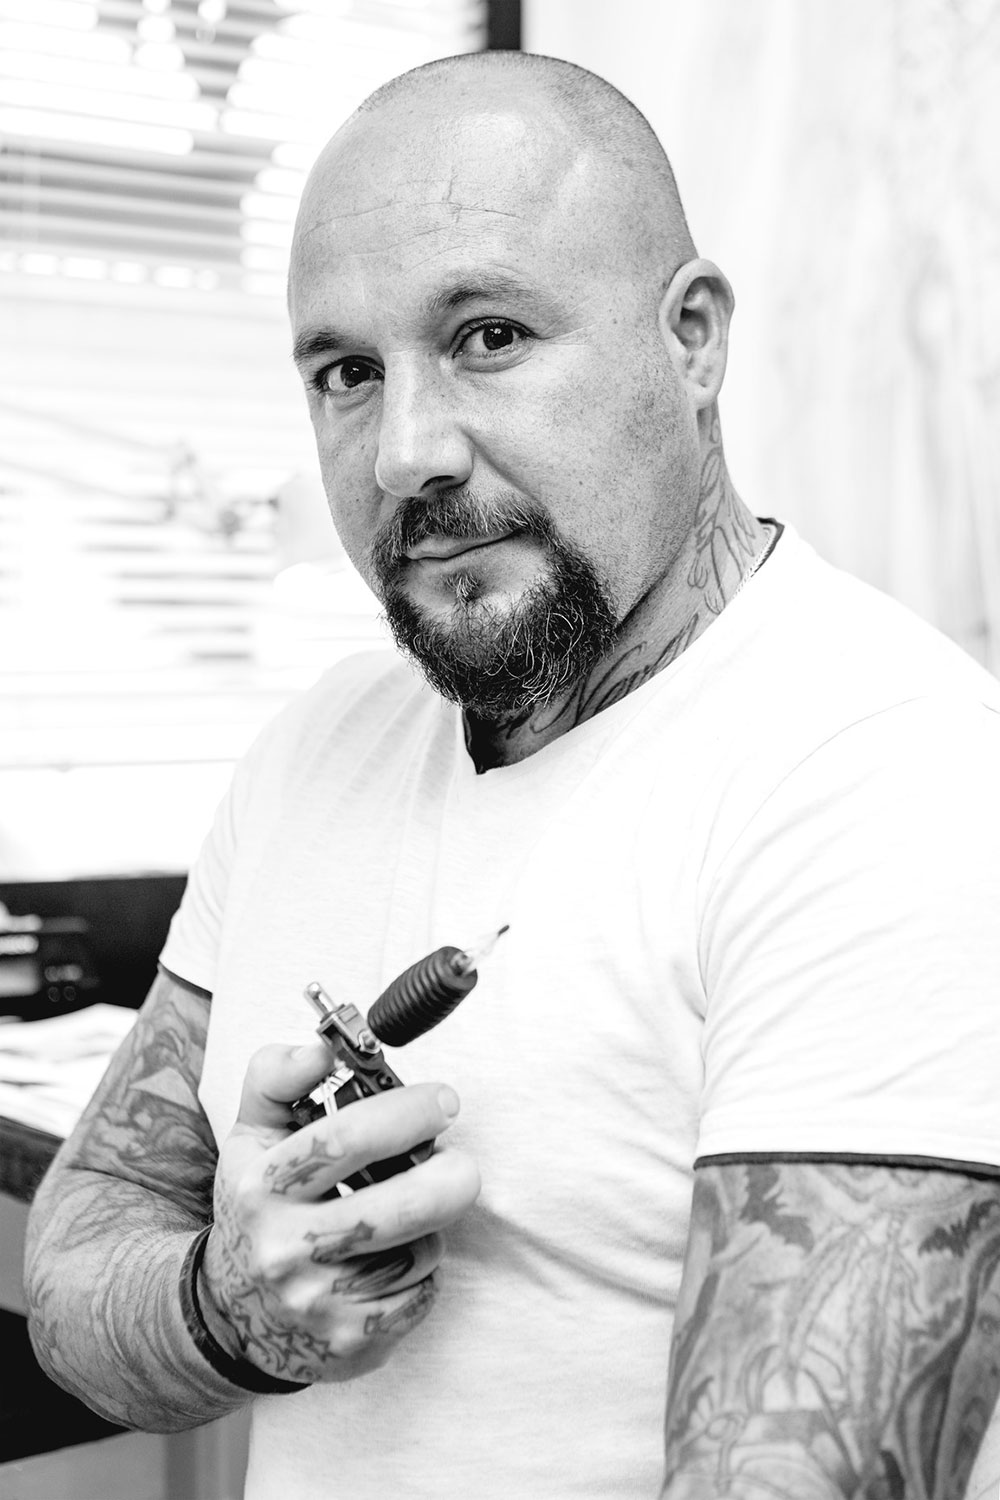 Patrick Tattoomaker